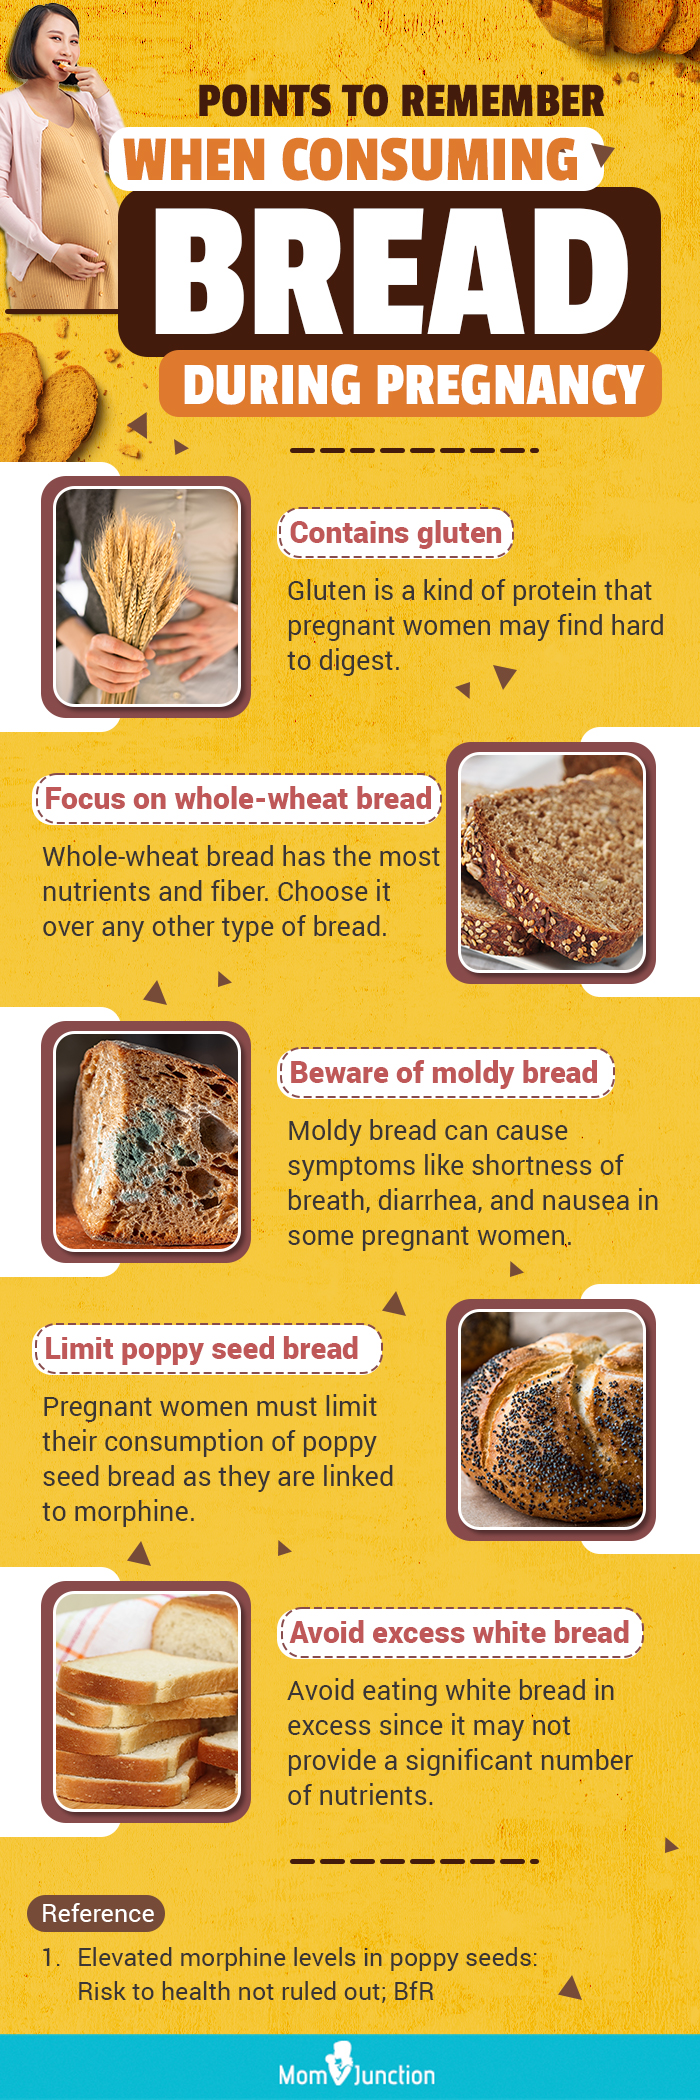 怀孕期间食用面包的注意事项(信息图)manbet安卓版